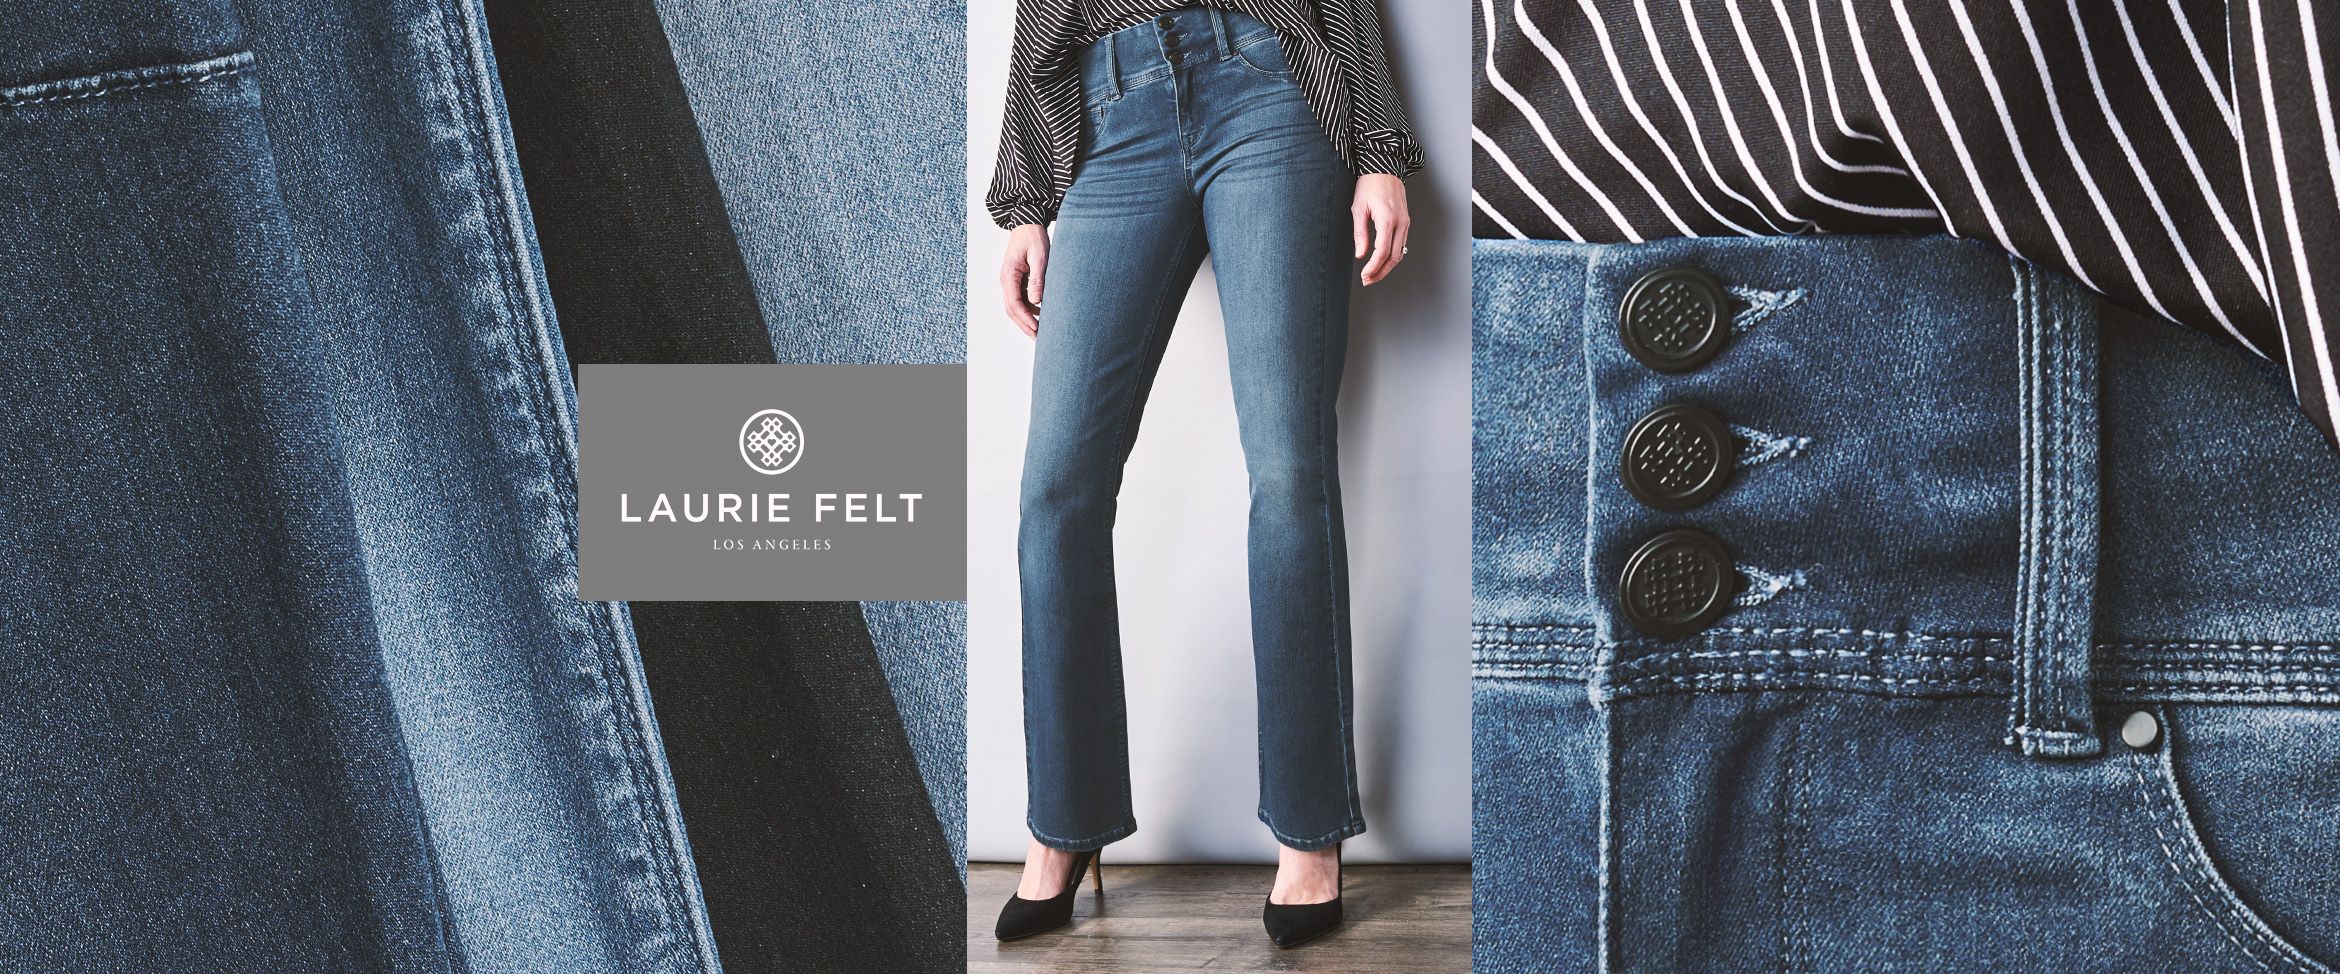 laurie felt jeans